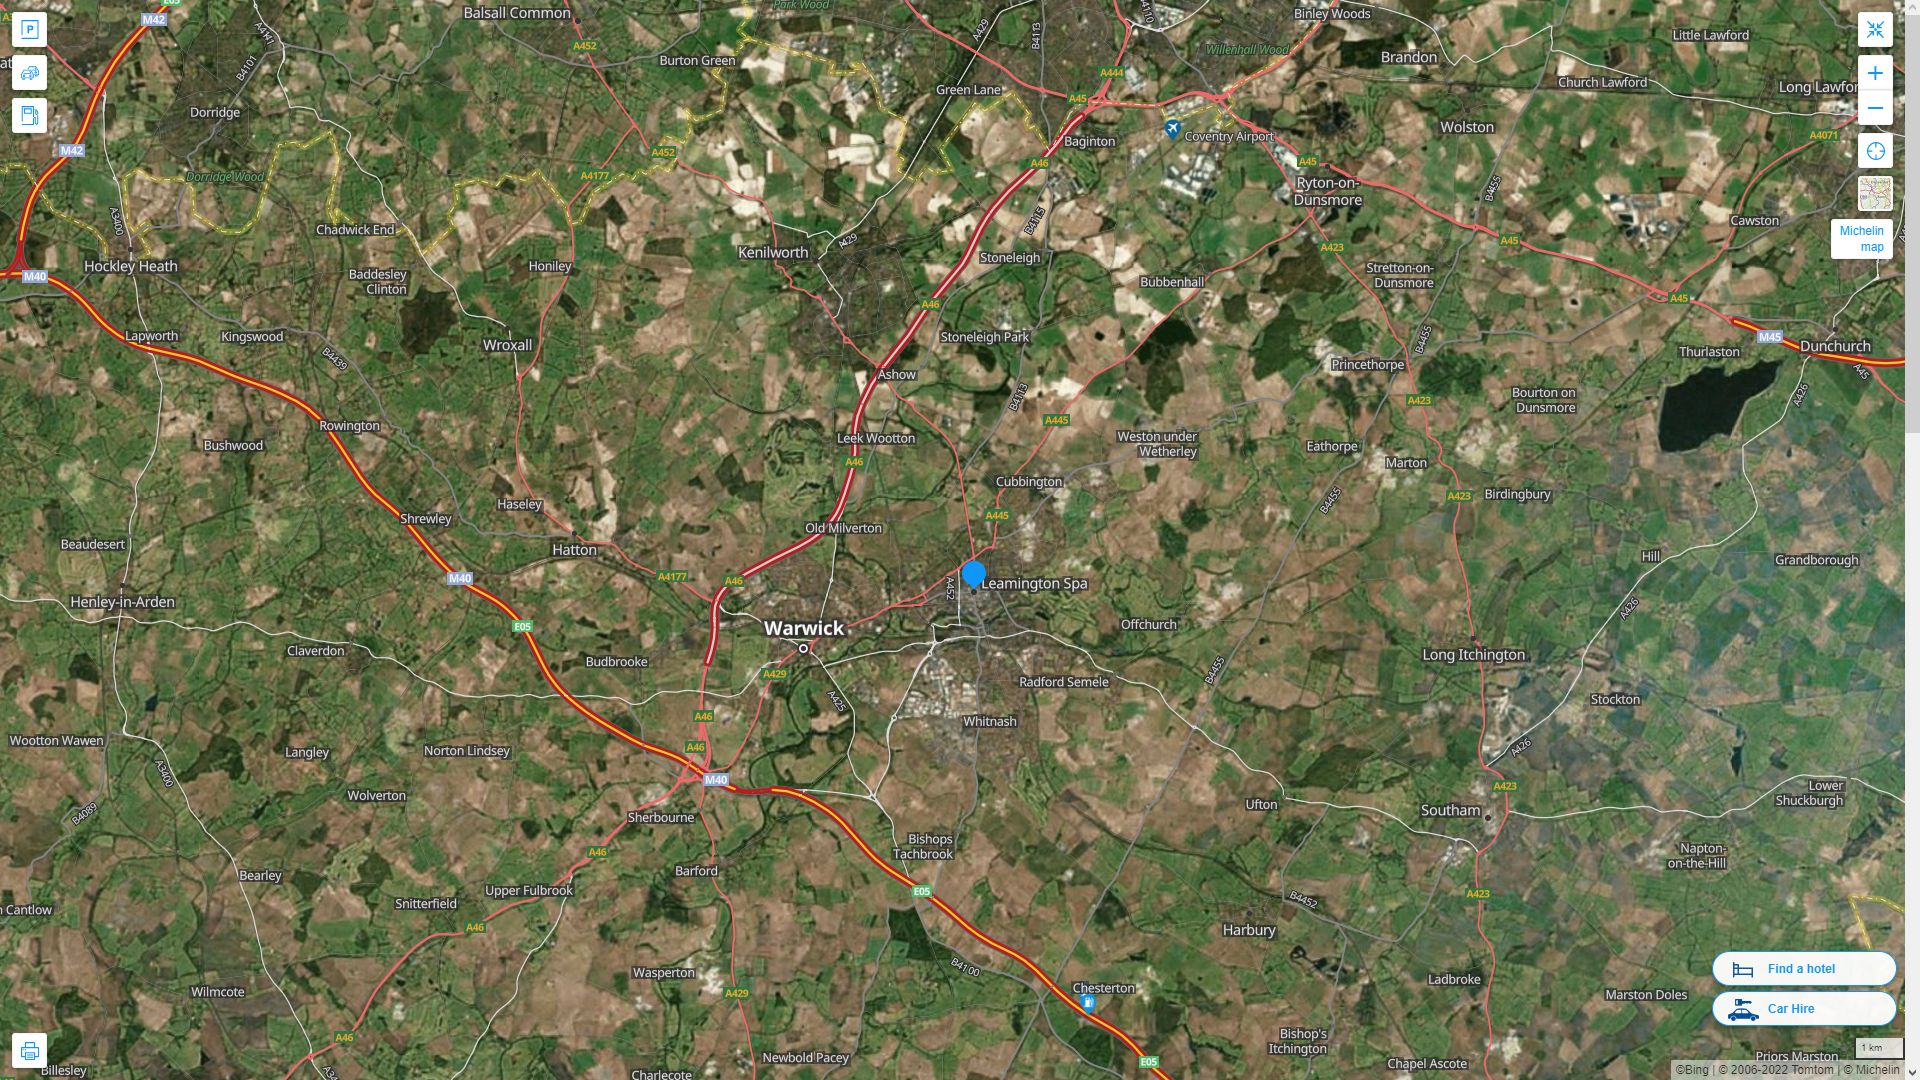 Royal Leamington Spa Royaume Uni Autoroute et carte routiere avec vue satellite